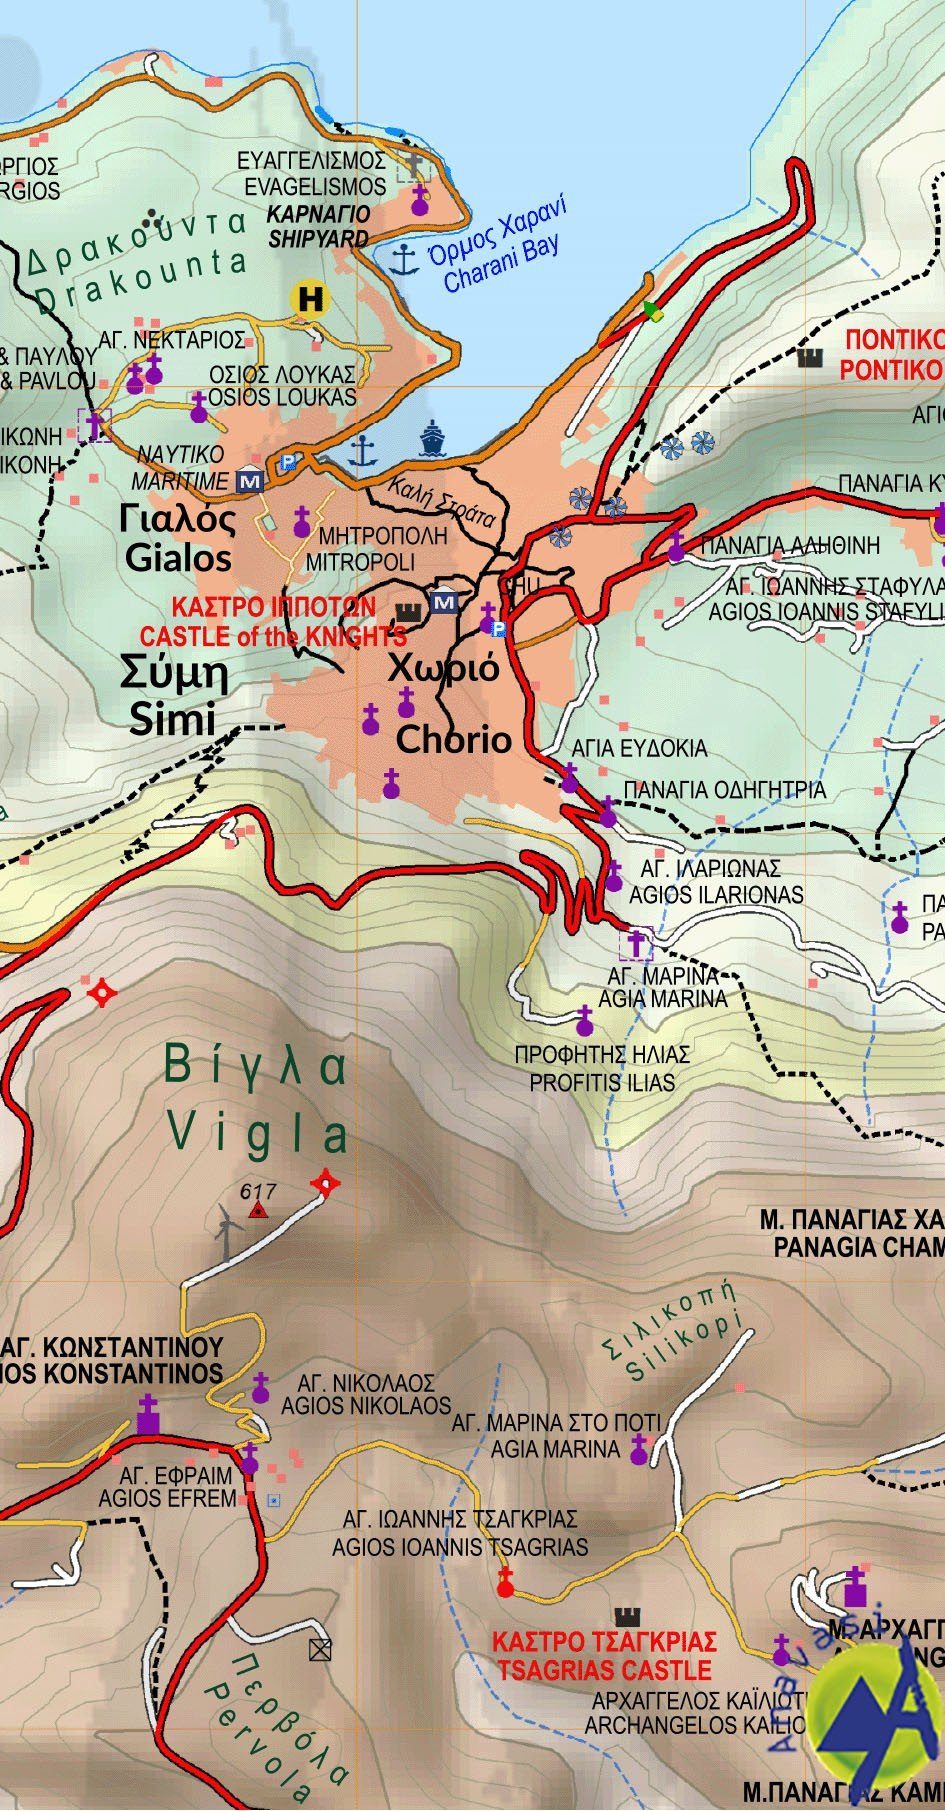 Carte de randonnée - île de Rhodes | Anavasi carte pliée Anavasi 